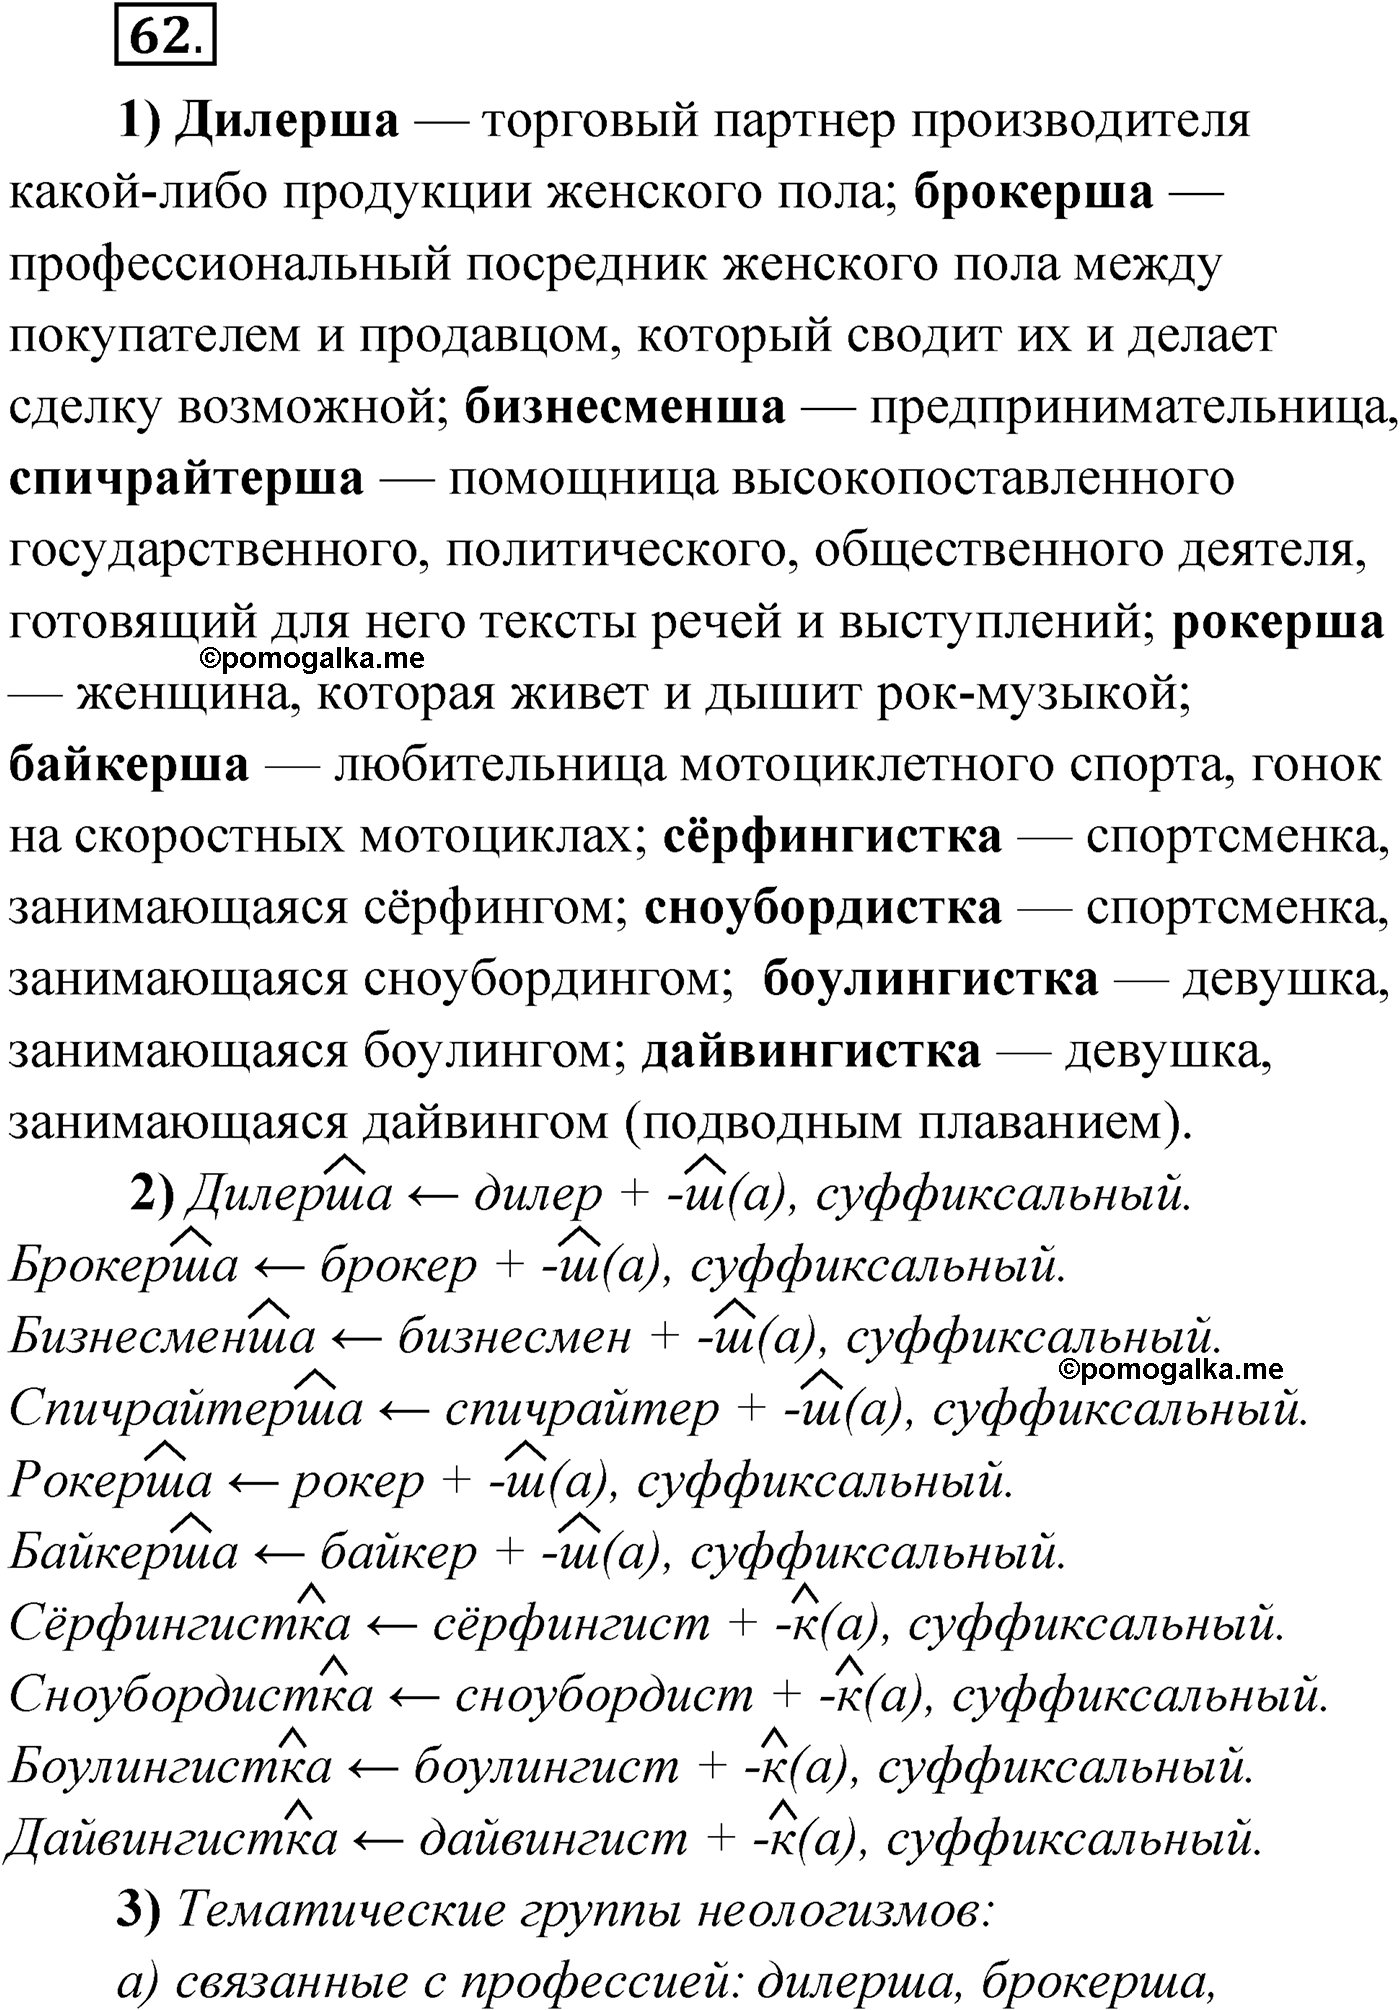 упражнение №62 русский язык 9 класс Александрова 2022